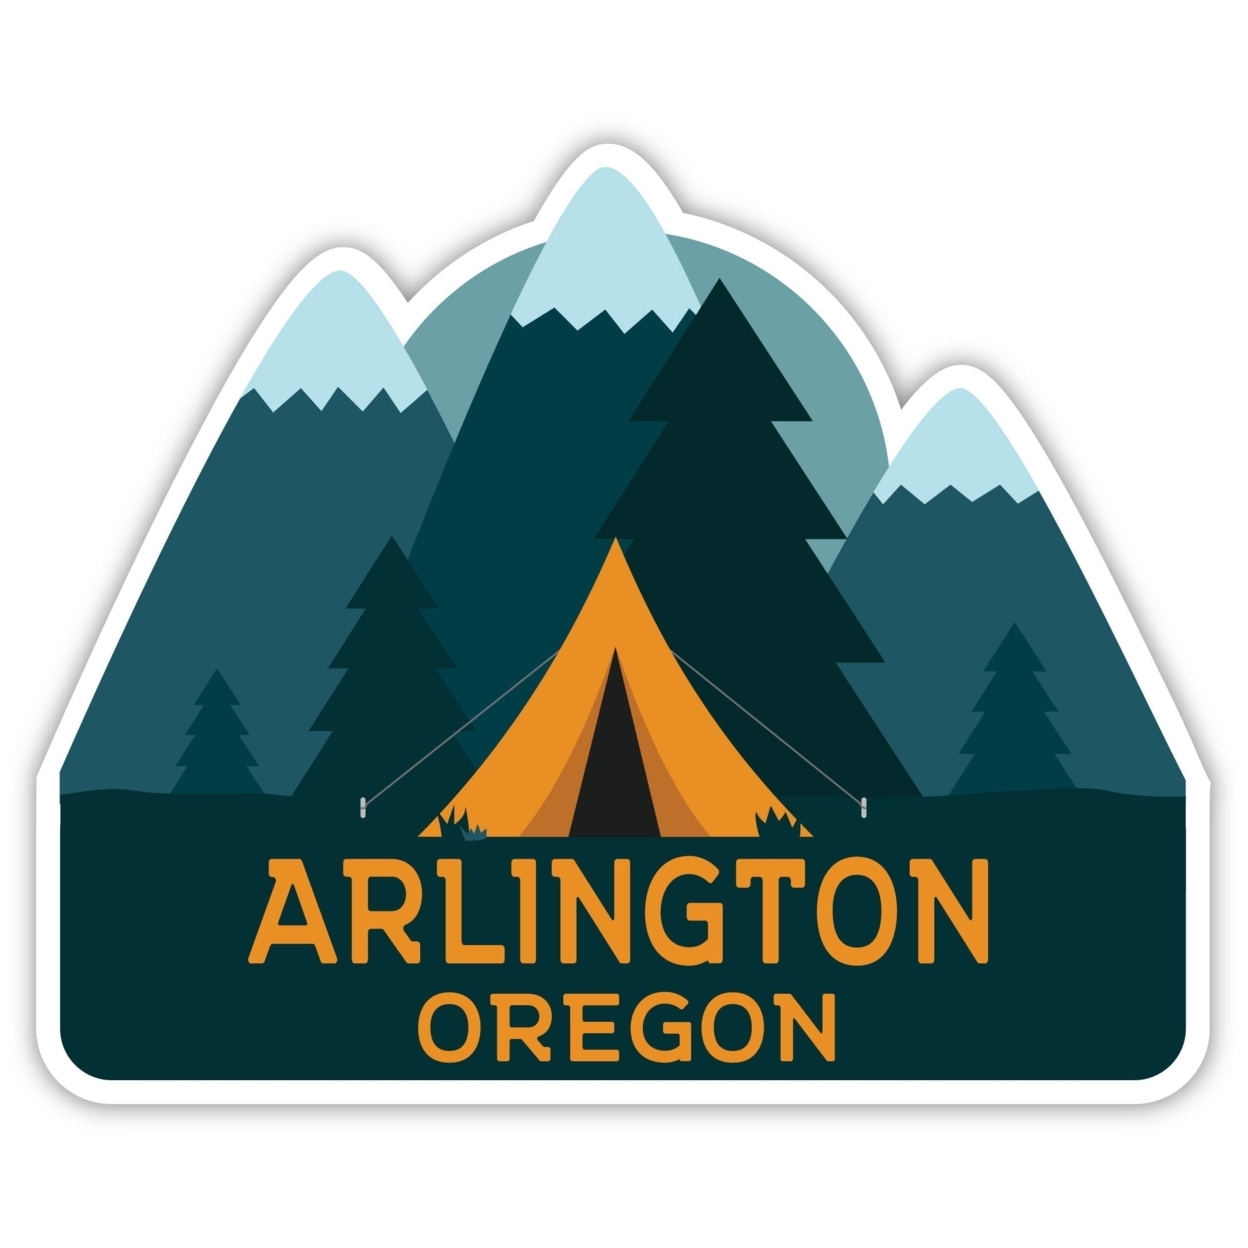 Arlington Oregon Souvenir Decorative Stickers (Choose Theme And Size) - Single Unit, 10-Inch, Tent